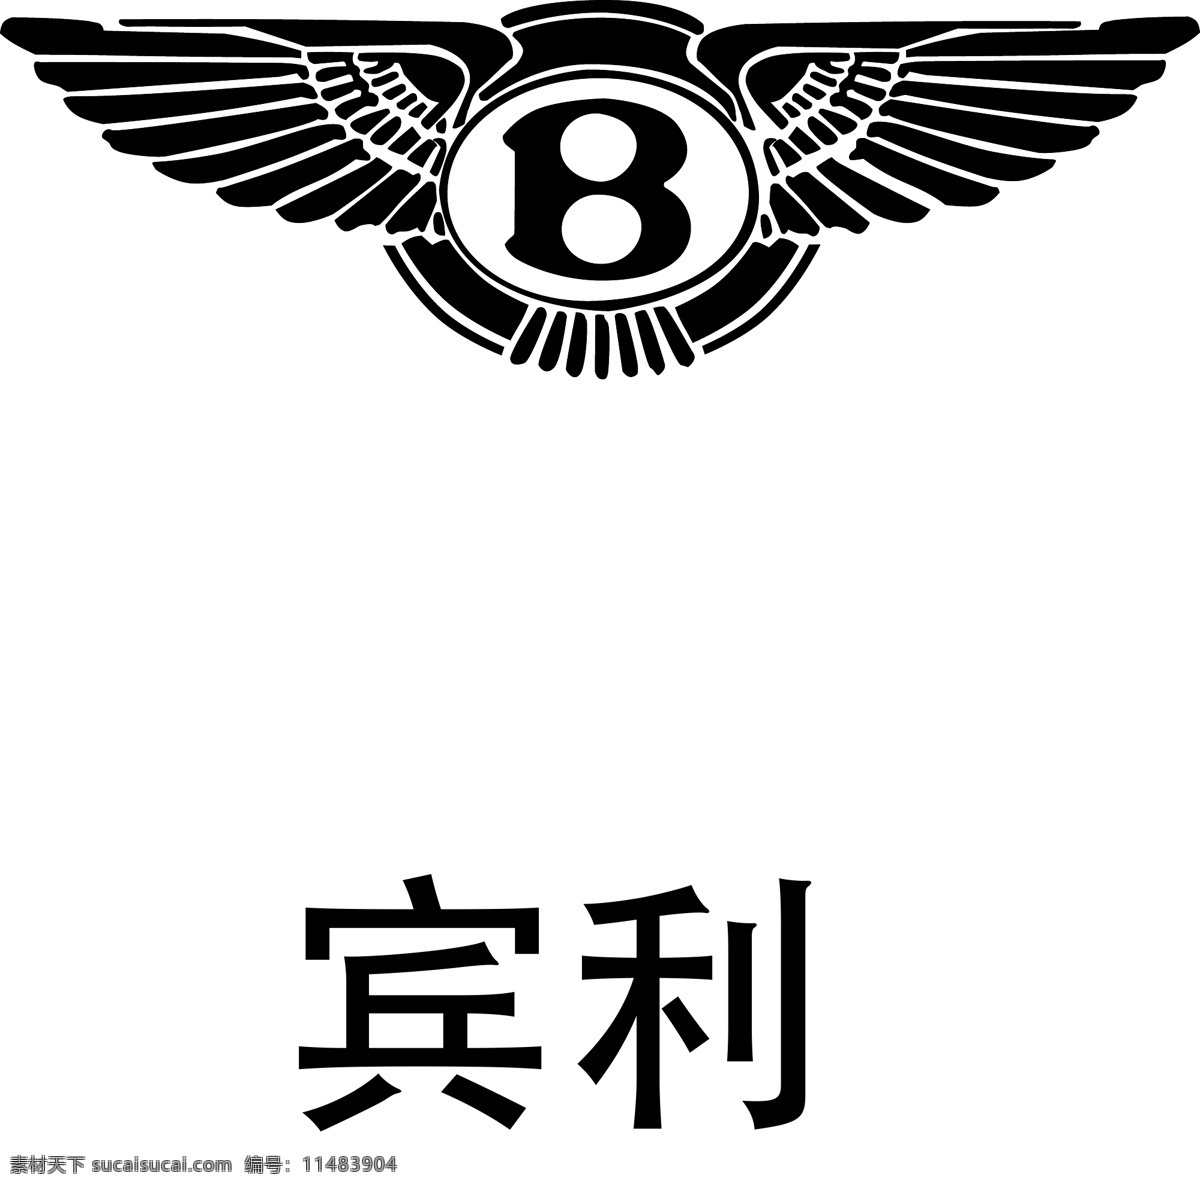 宾利车标 宾利logo 宾利标志 宾利商标 宾利标识 宾利图标